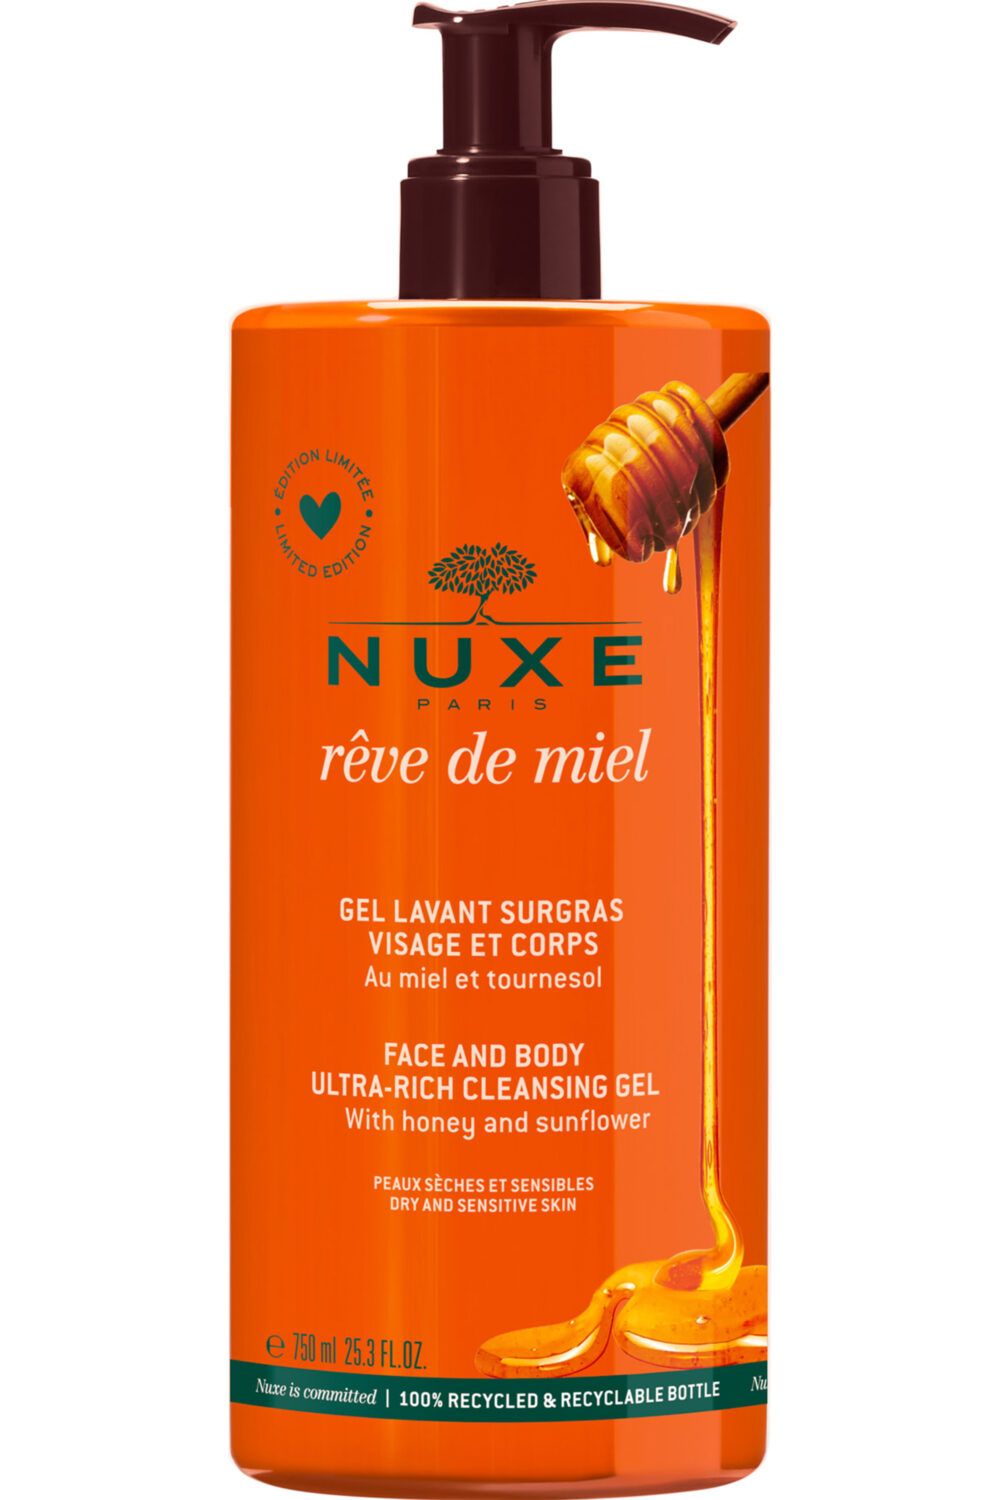 Nuxe - Gel lavant surgras visage et corps Rêve de Miel®